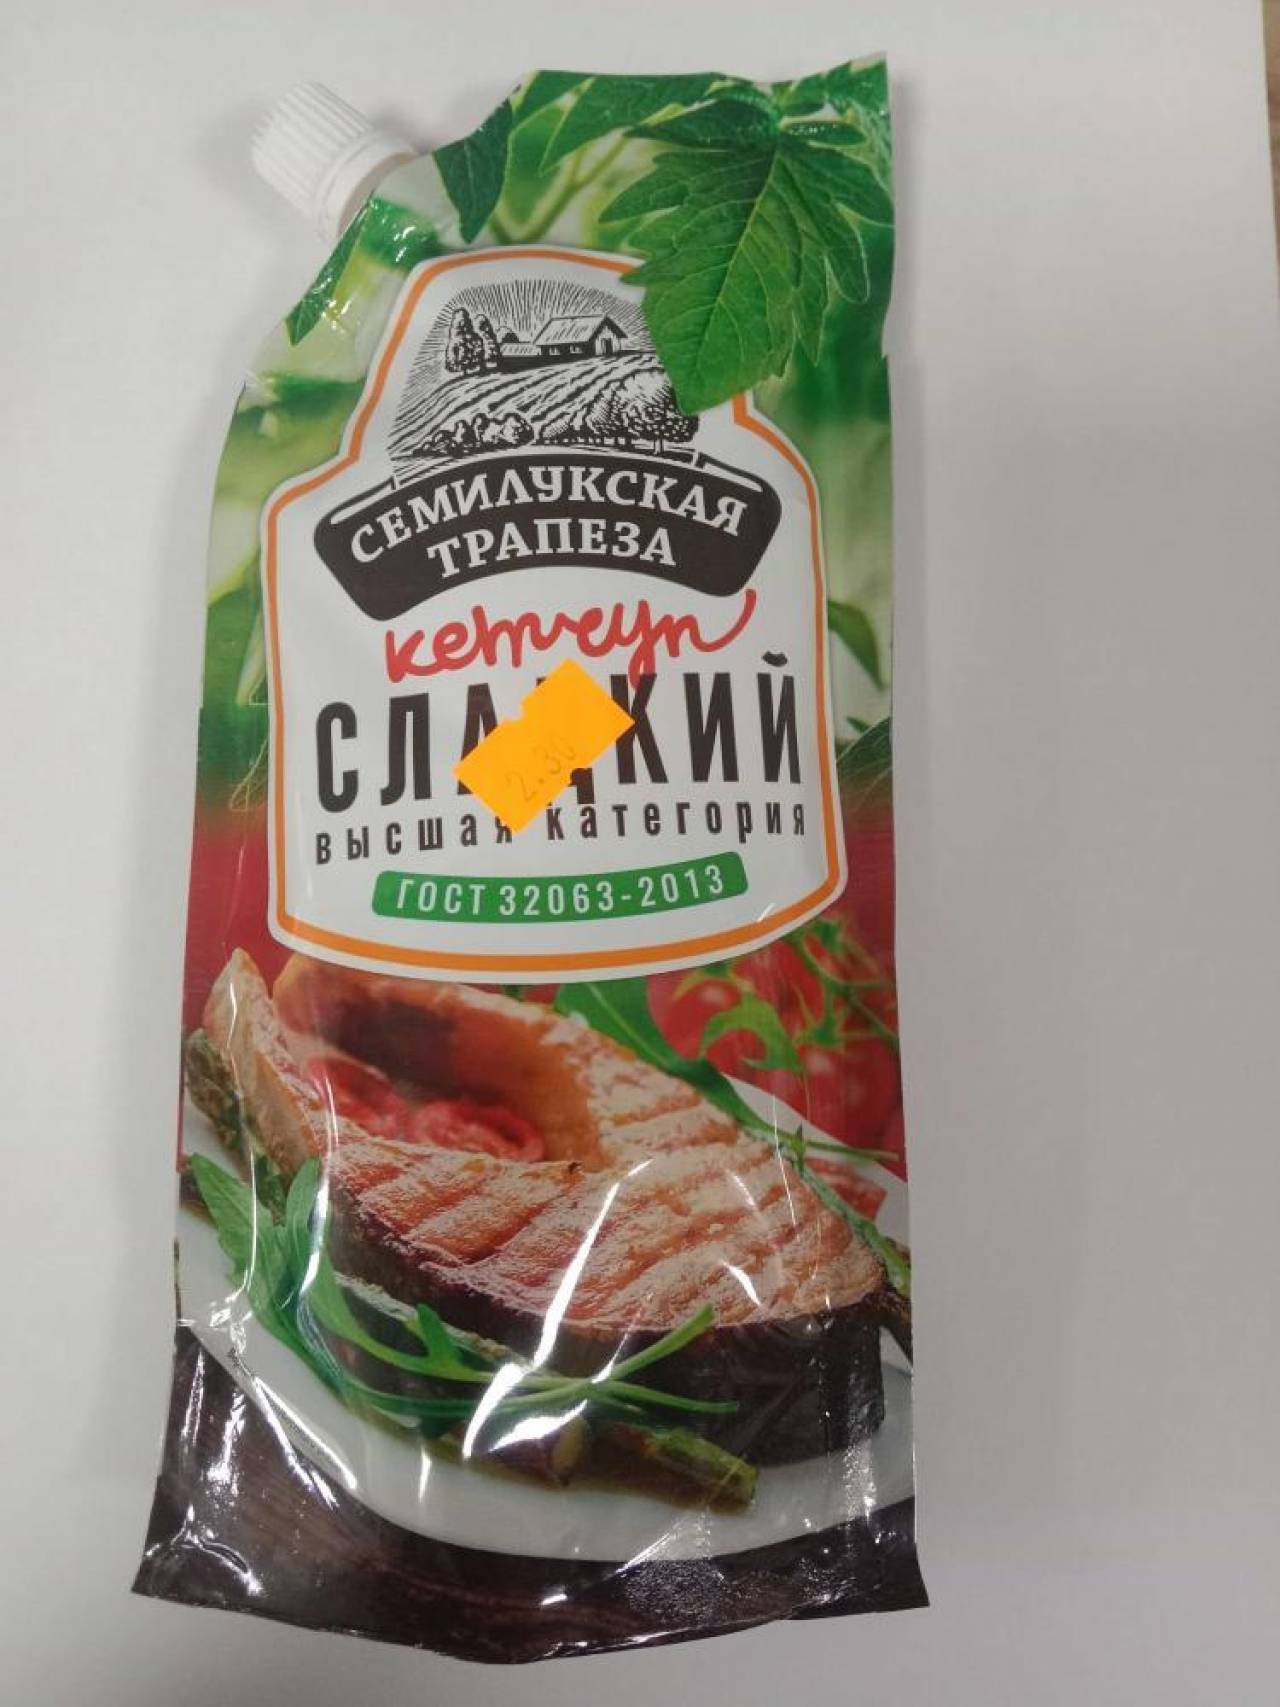 В Беларуси запретили продавать некоторые полуфабрикаты блинчиков, сладости, кетчуп и сушеного кальмара